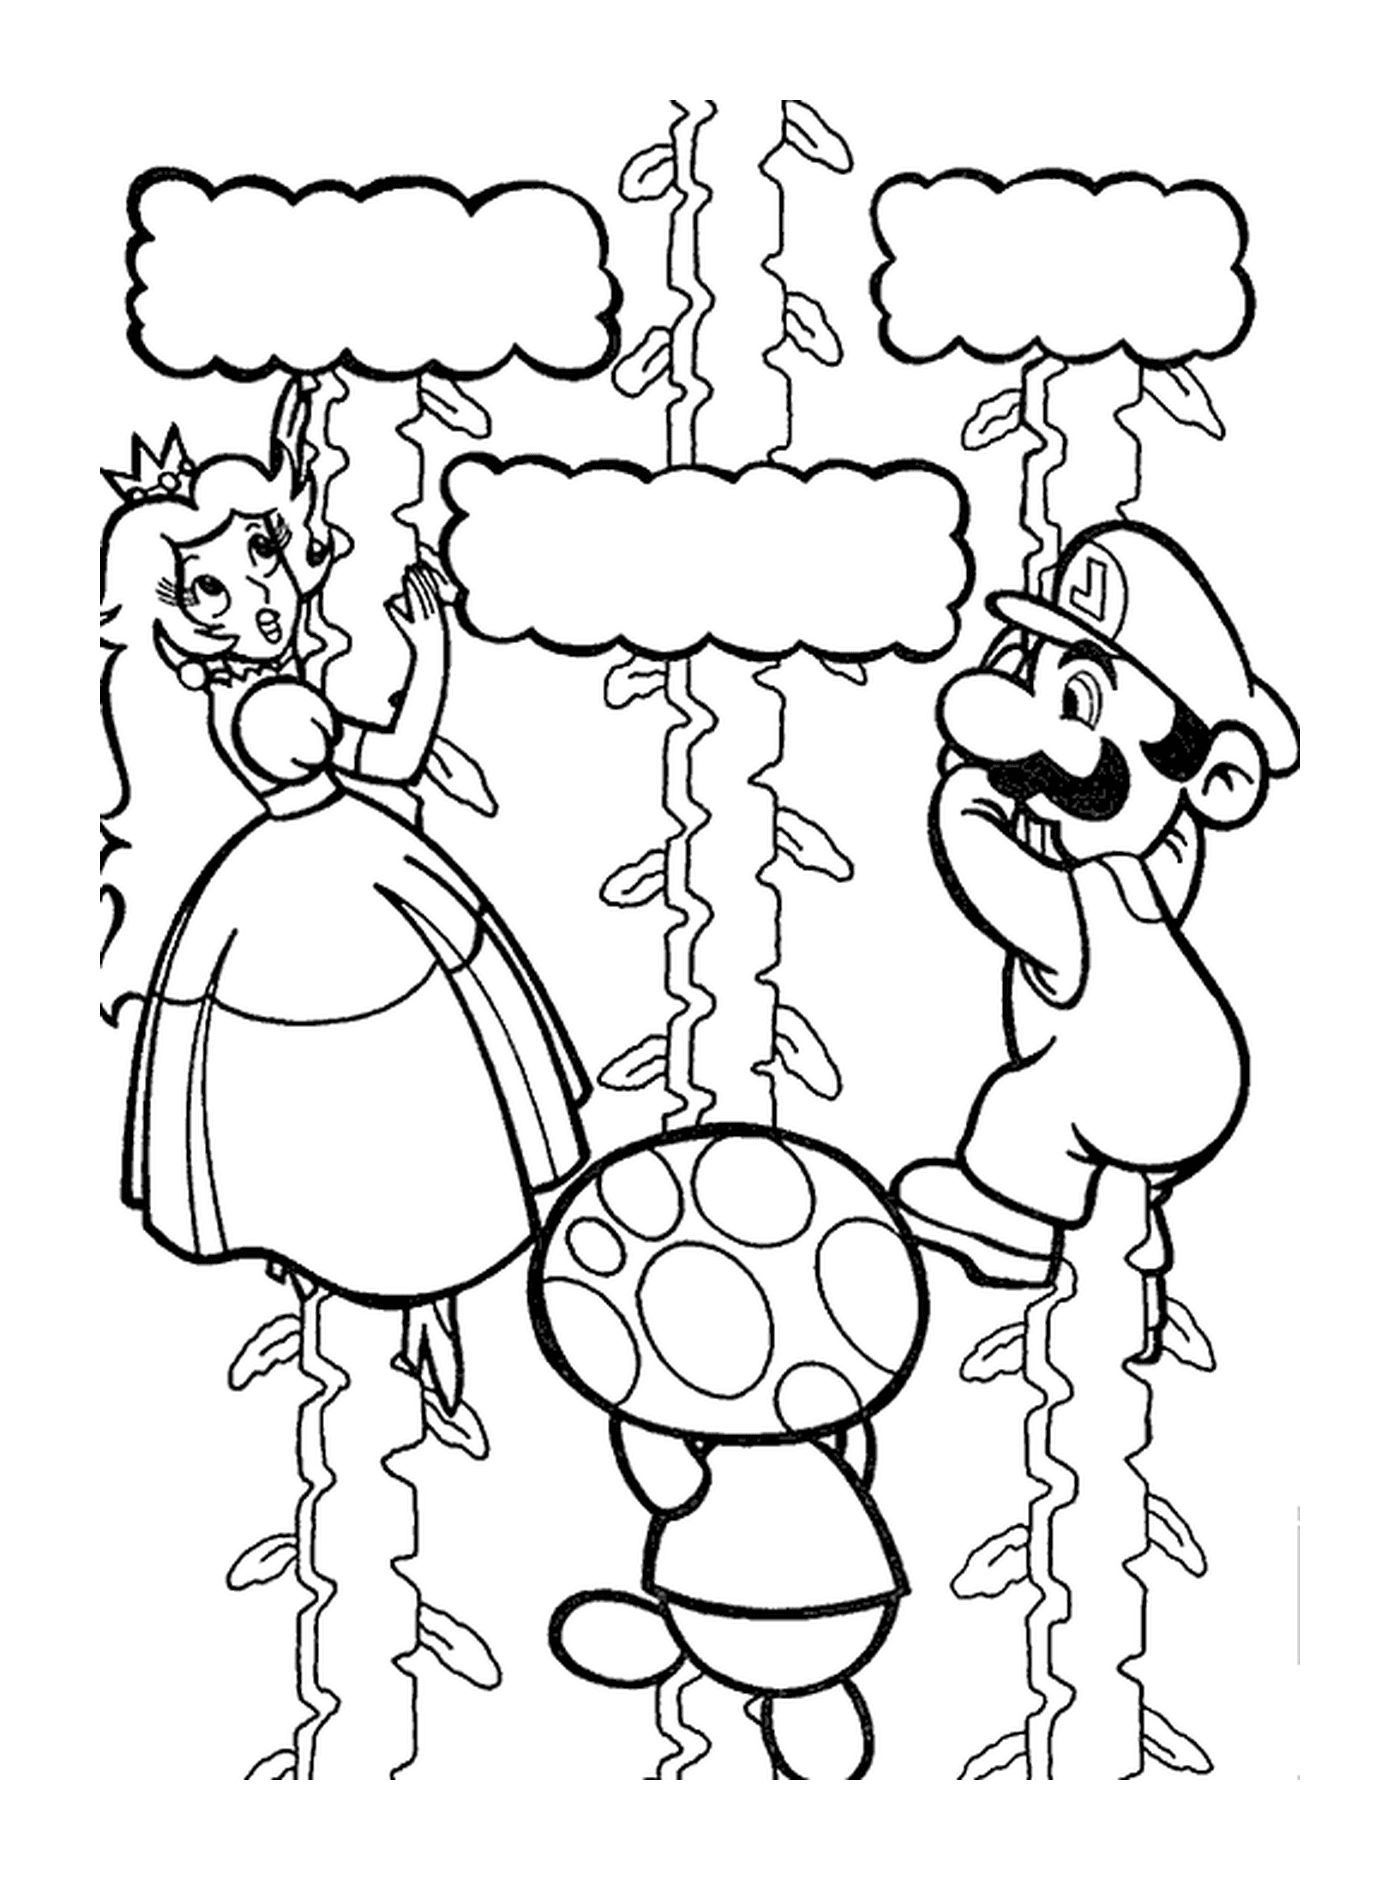   Mario, Peach et Toad escaladent vers le ciel 